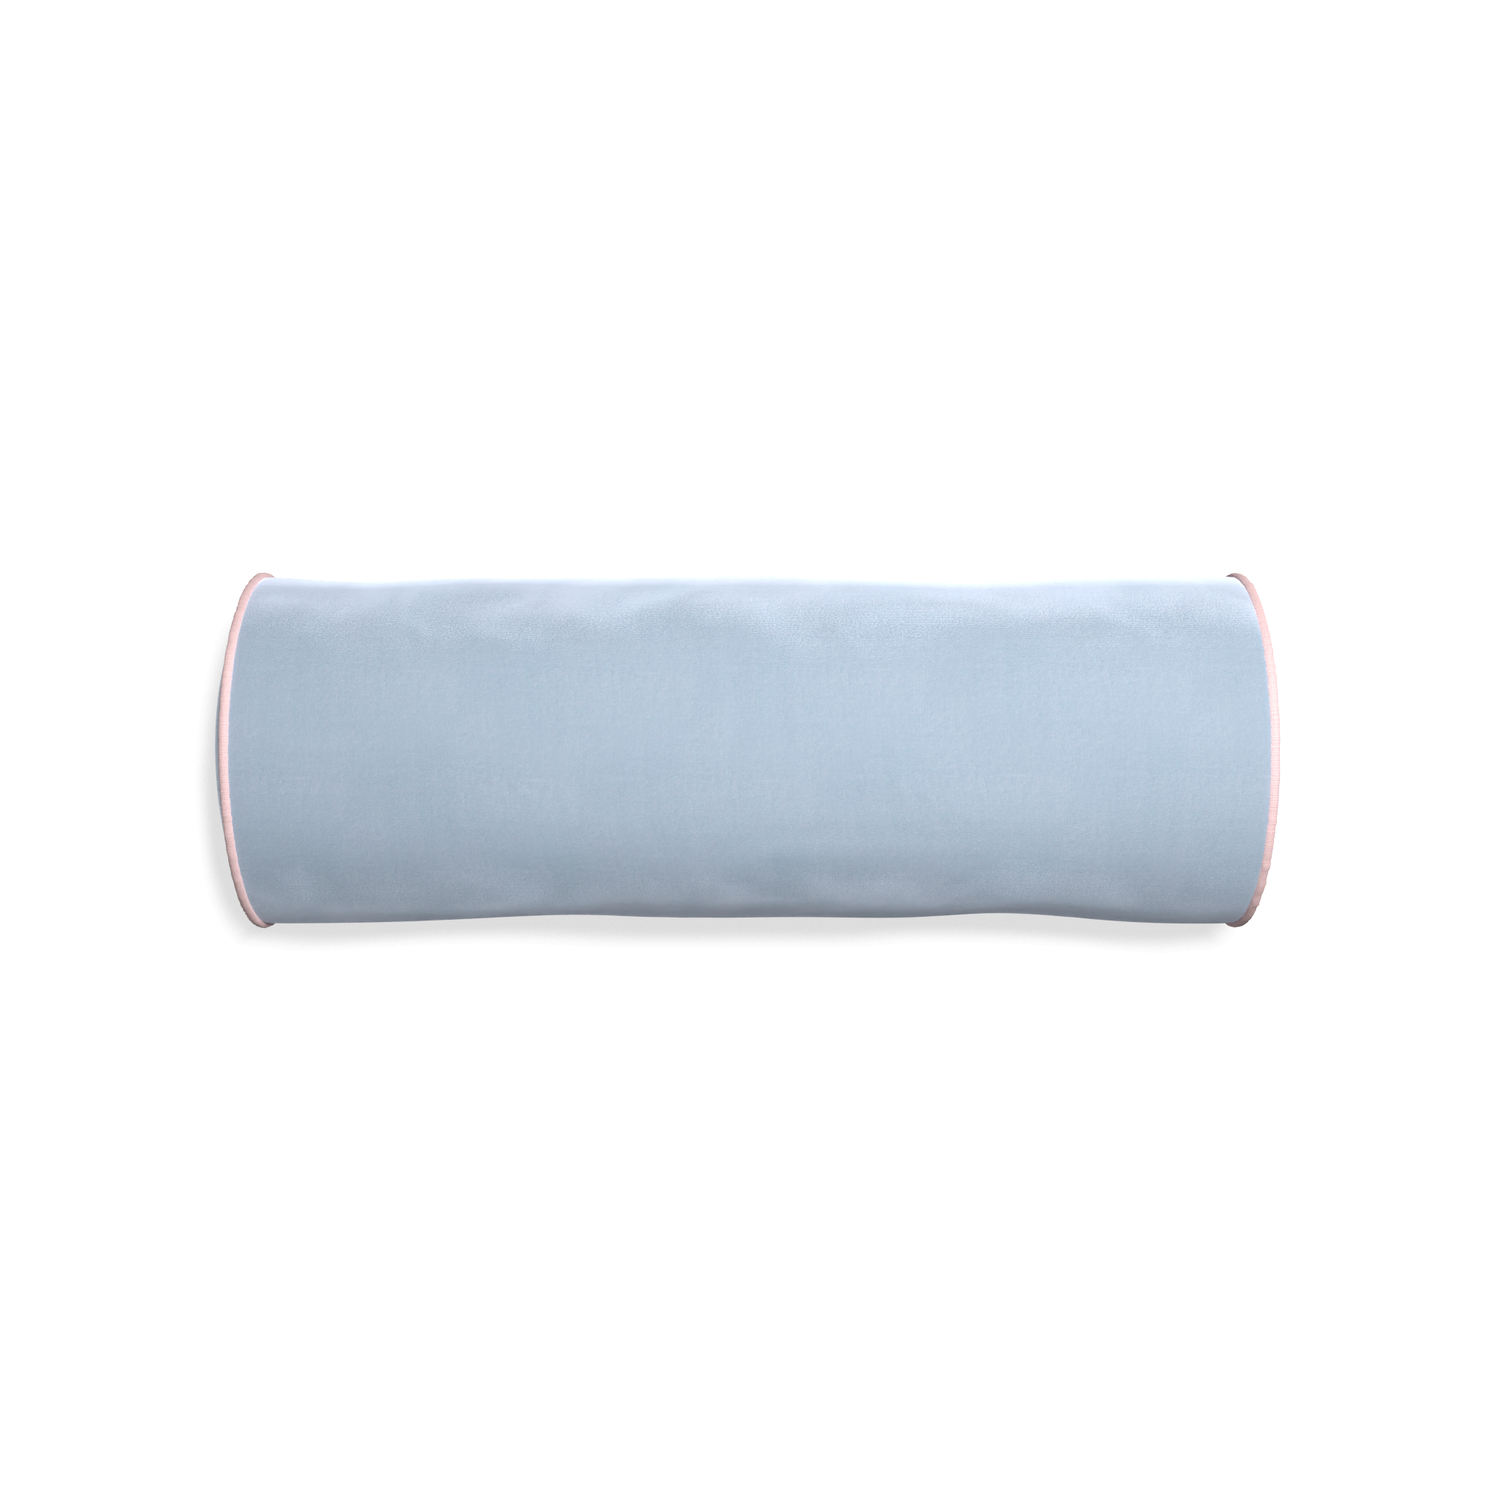 Bolster sky velvet custom pillow with petal piping on white background